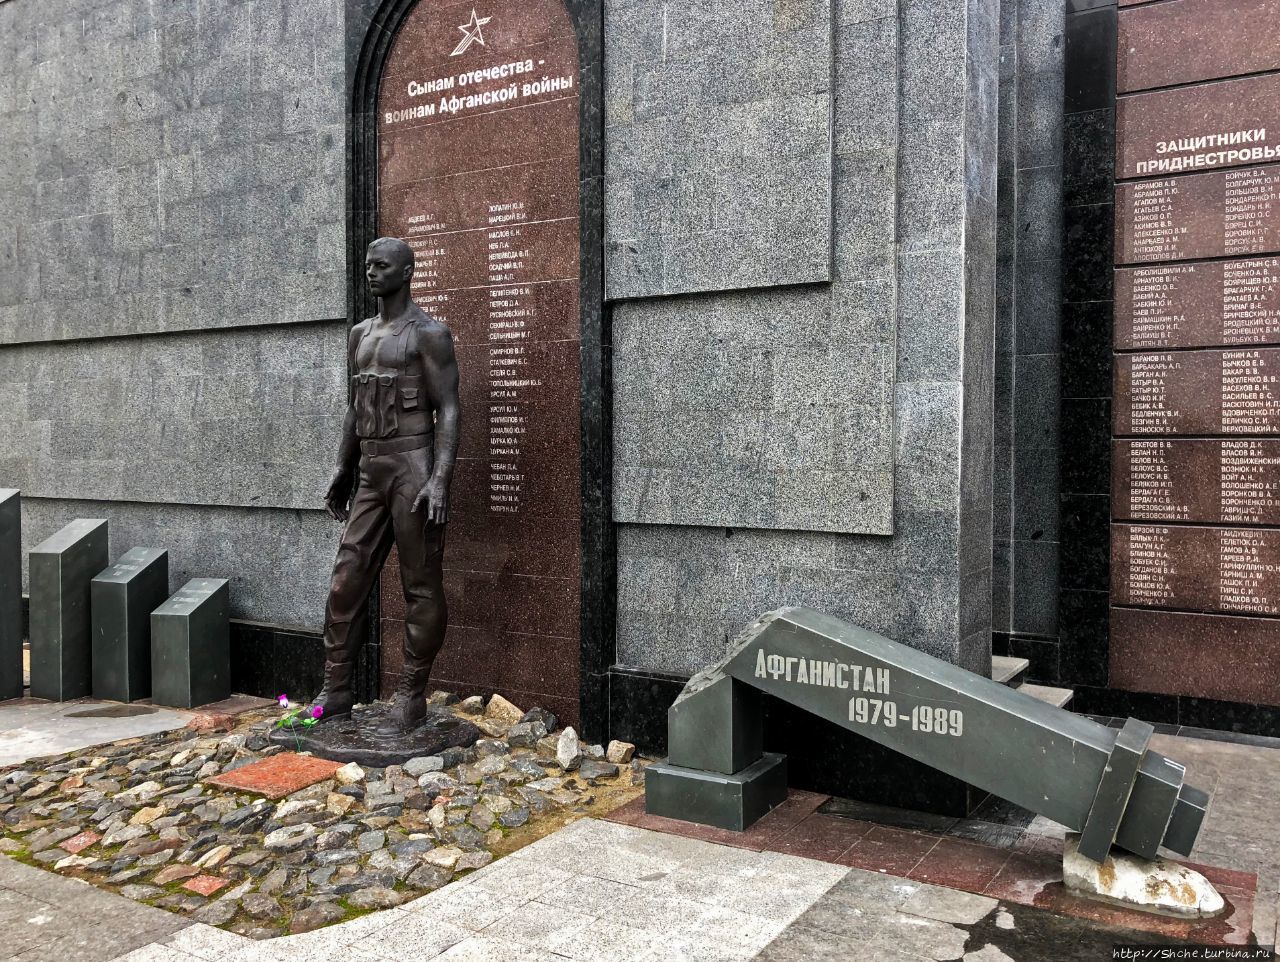 Мемориал Славы Тирасполь, Приднестровская Молдавская Республика